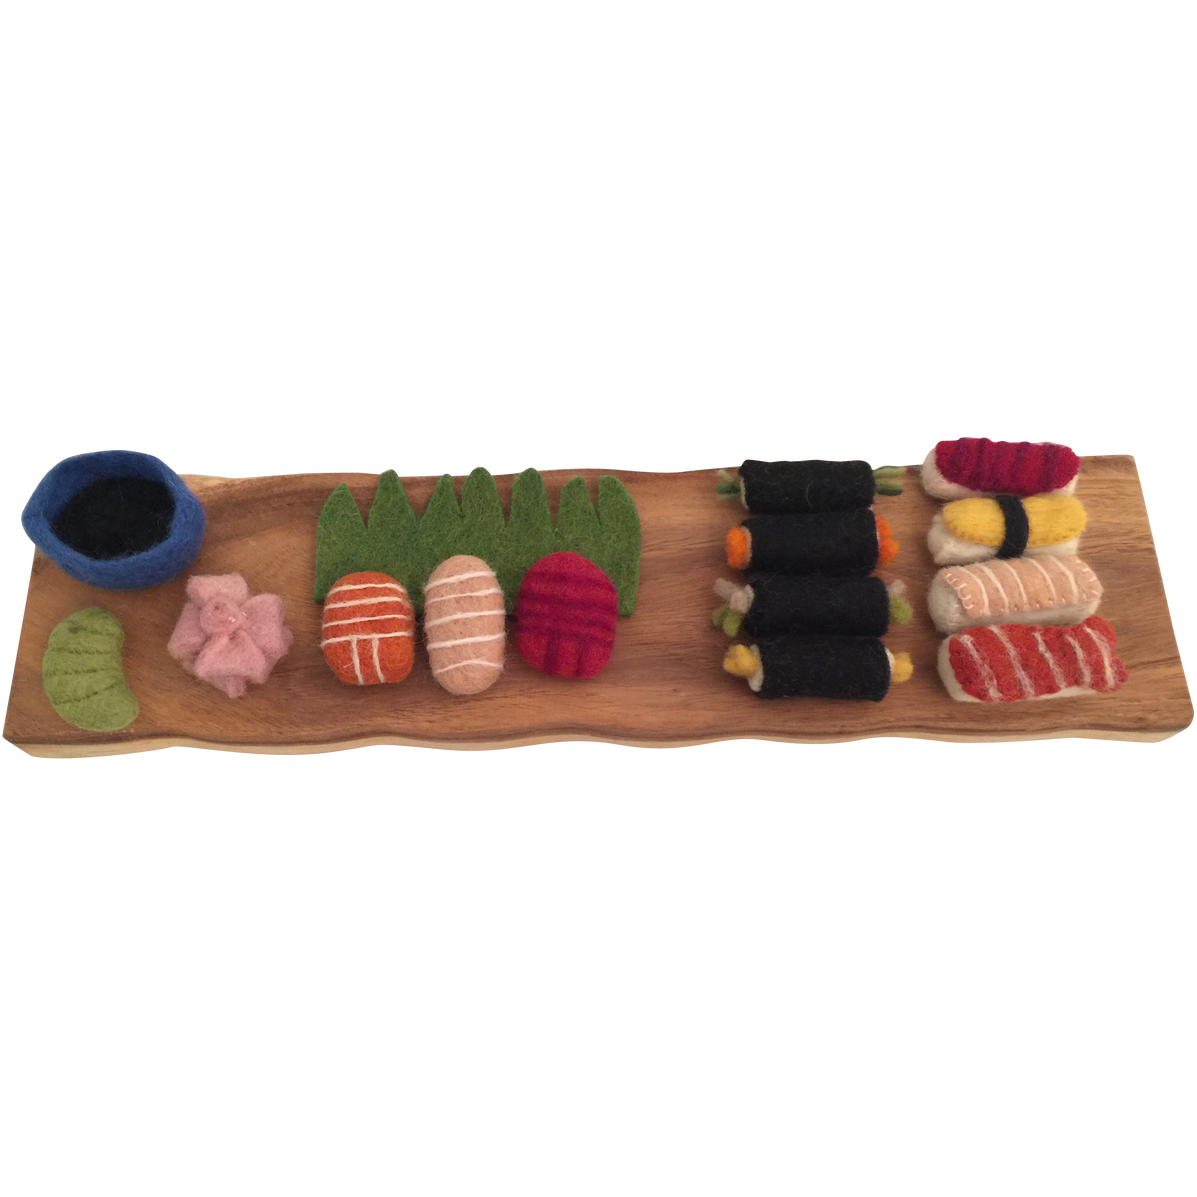 Felt Food Play Sushi Set, set of 4